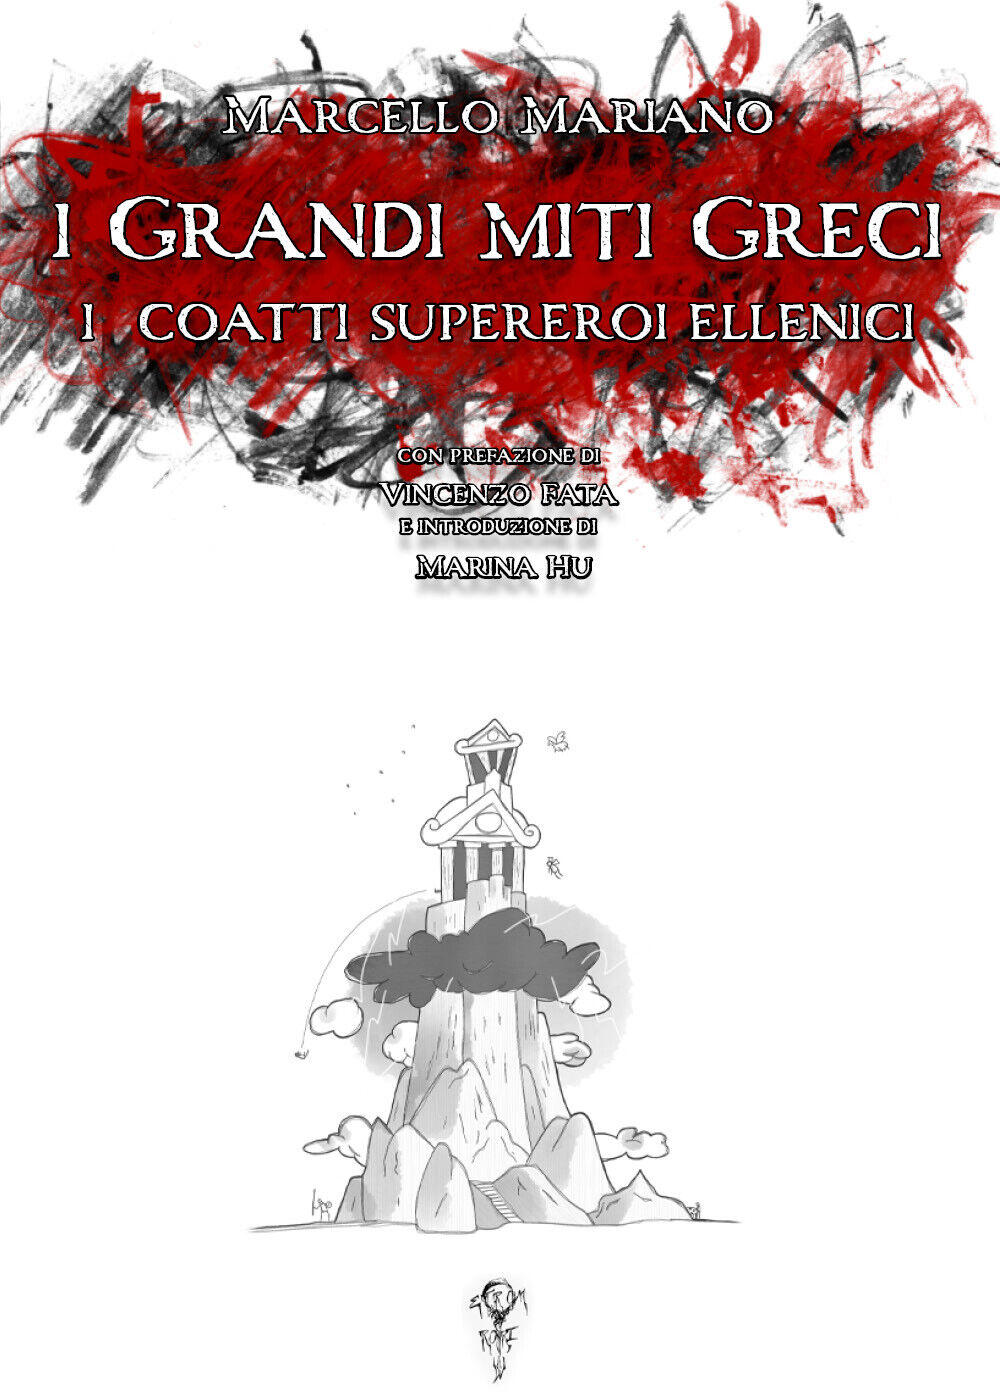 I grandi miti greci: i coatti supereroi ellenici di Marcello Mariano,  2020,  Yo